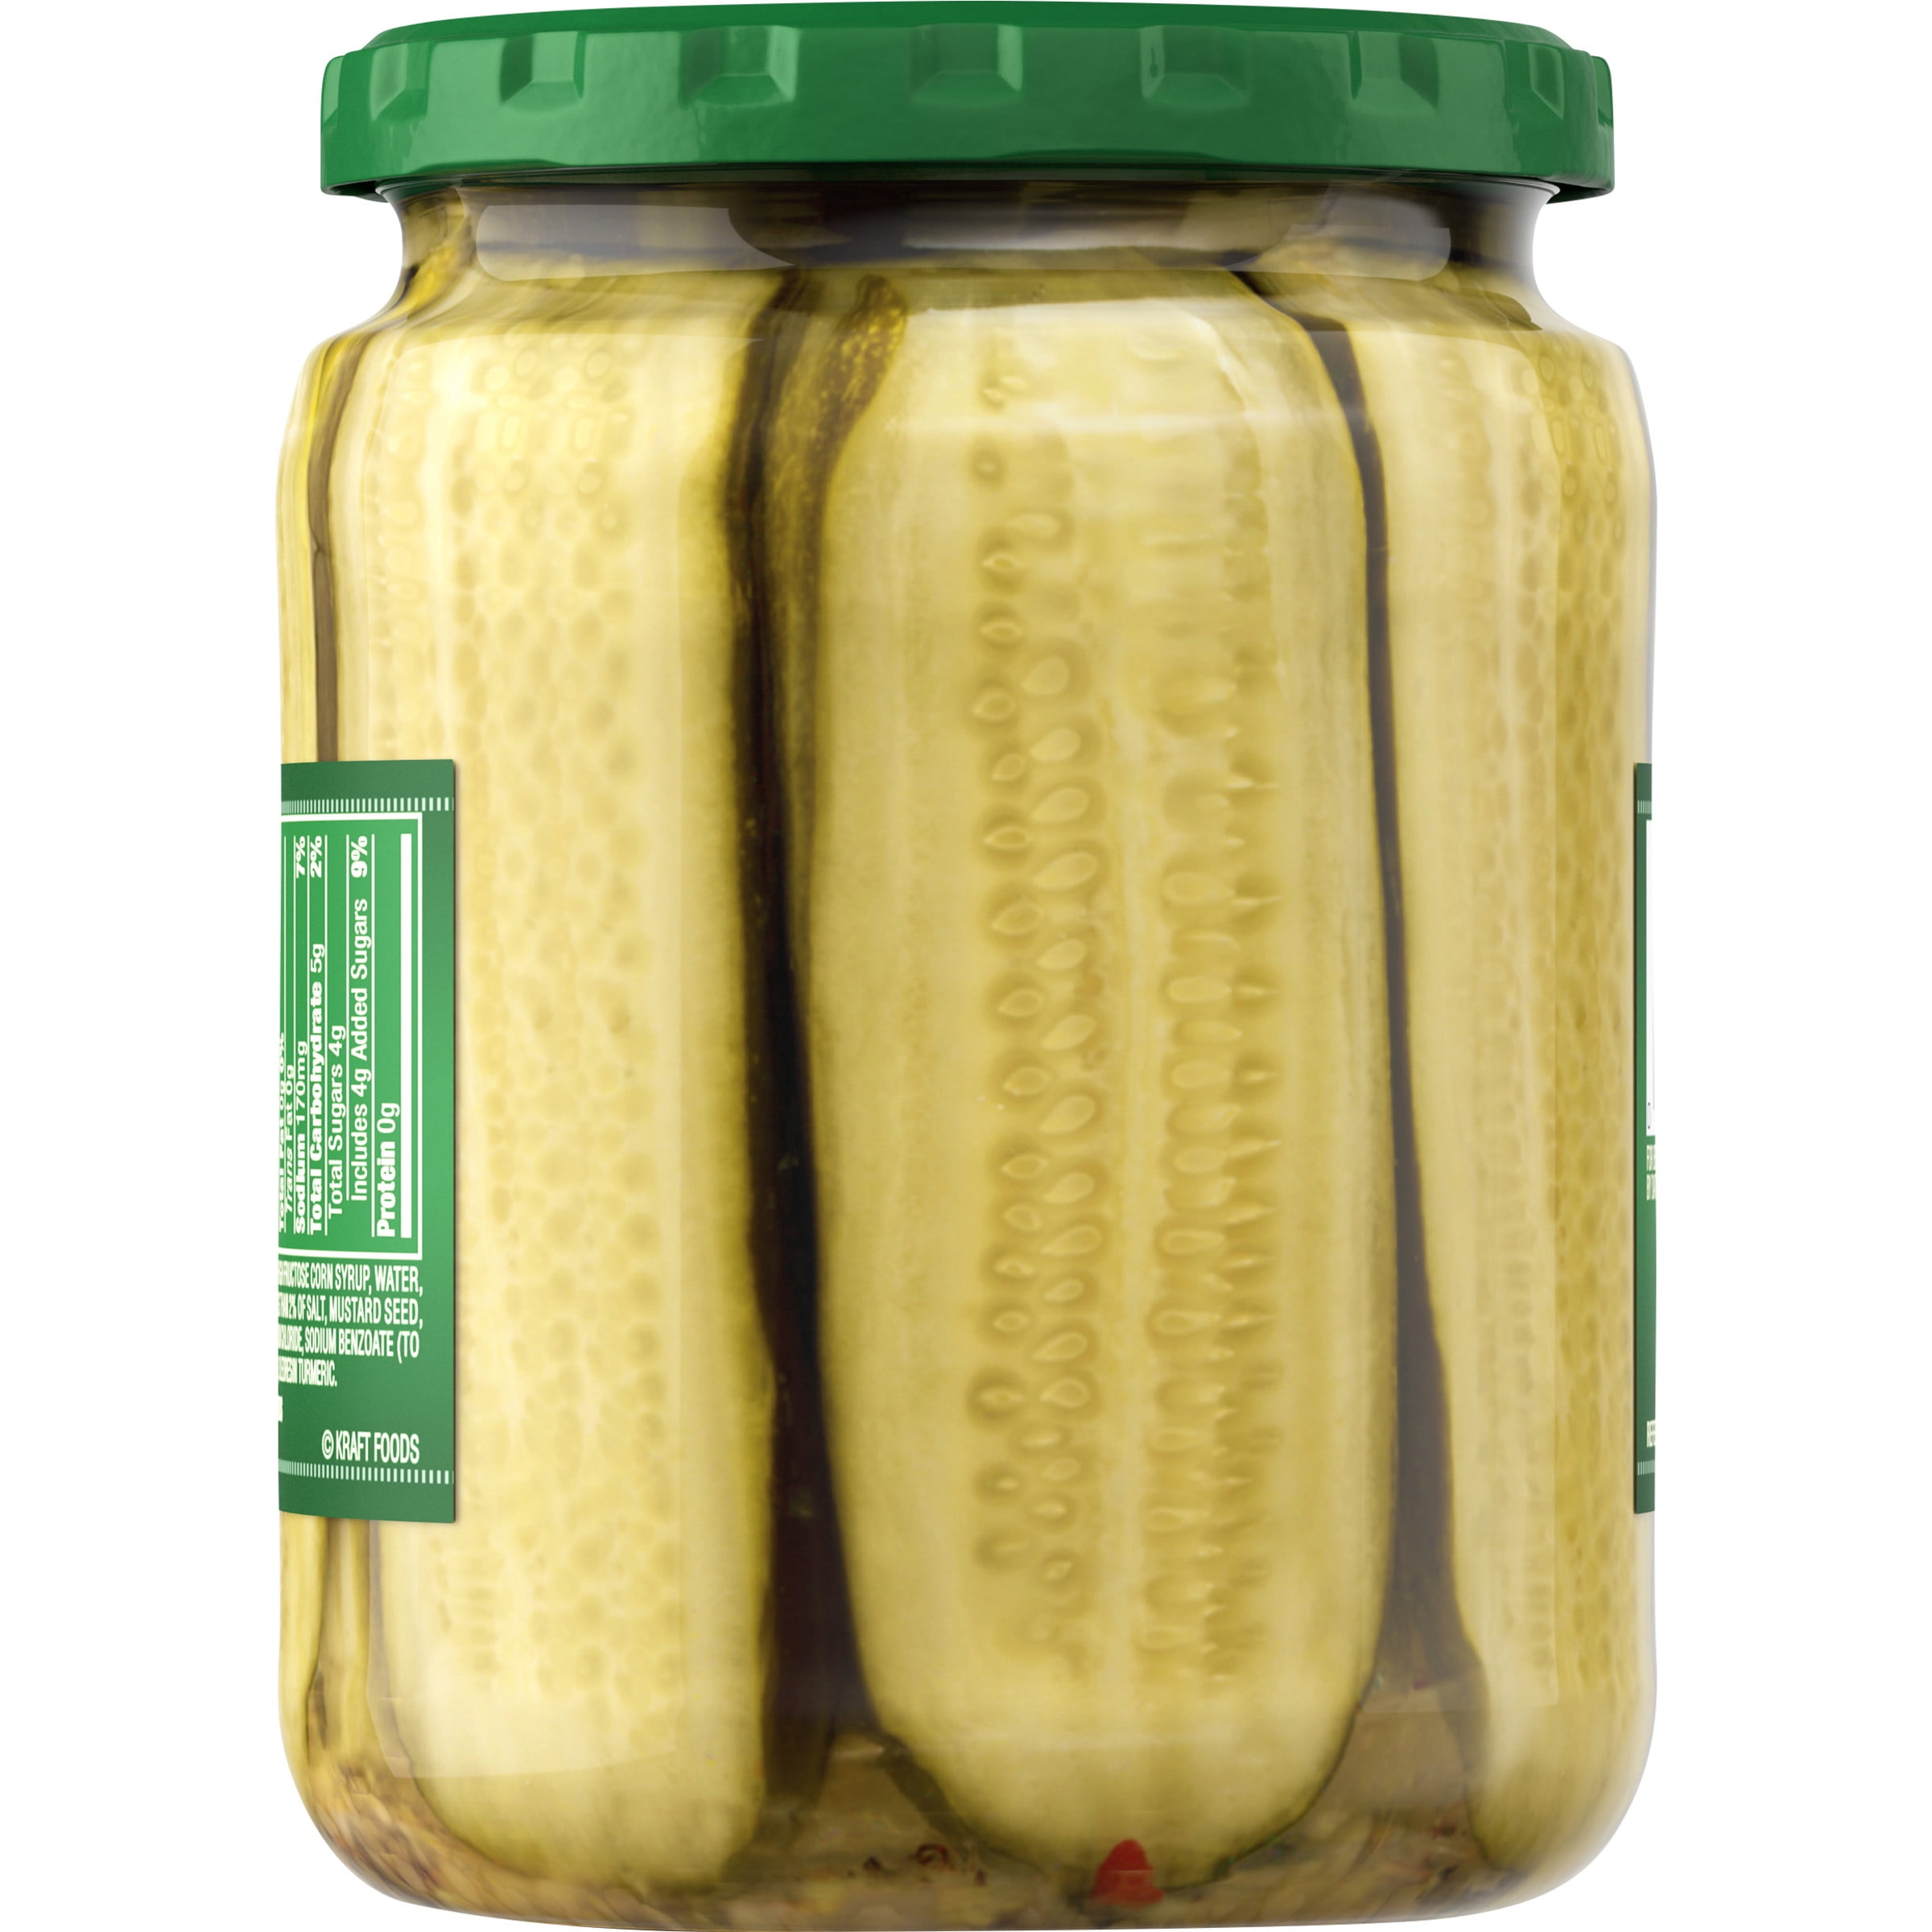 Signature SELECT Pickles Slicers Bread & Butter Jar - 16 Fl. Oz.